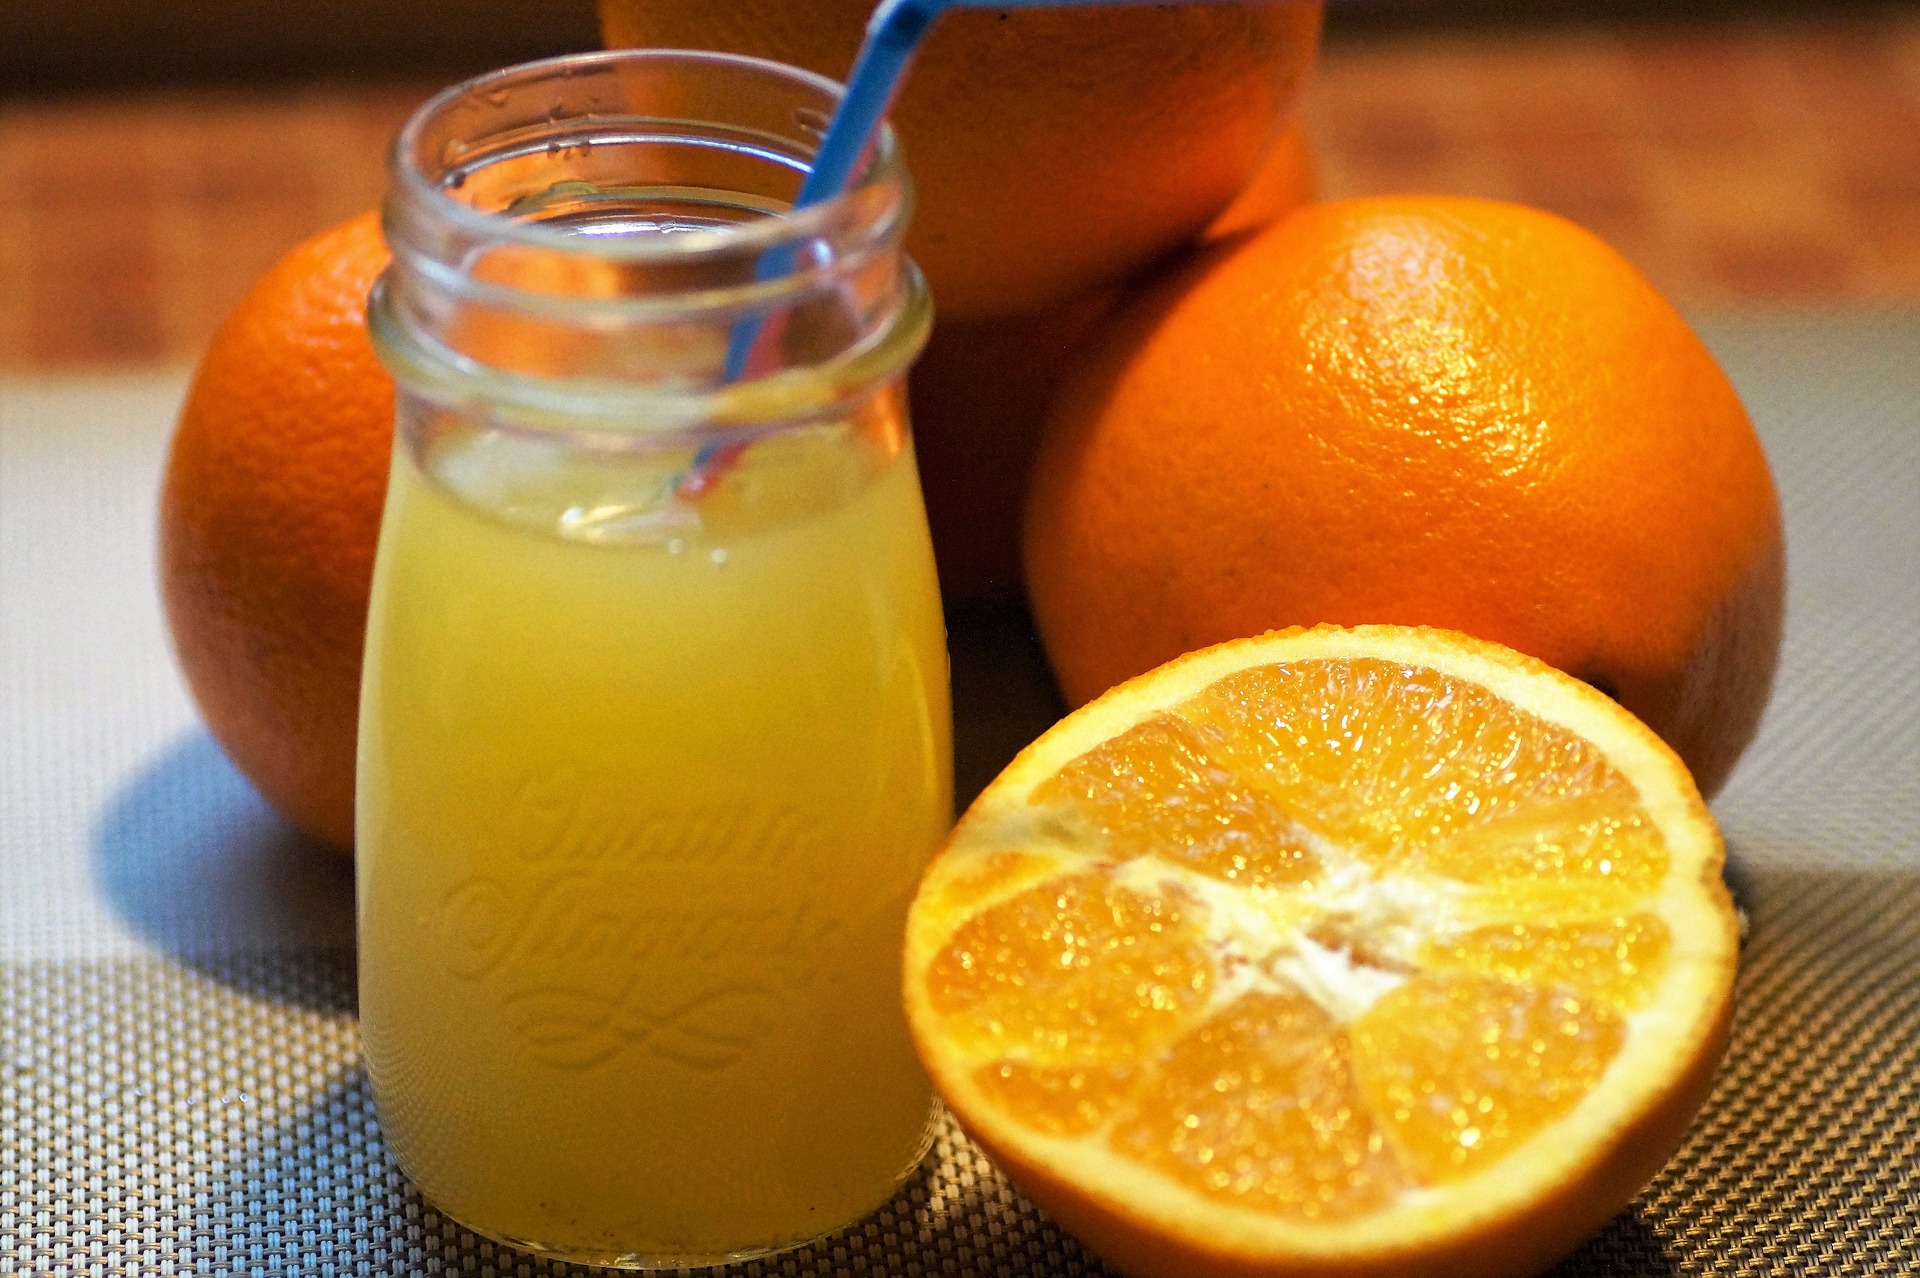 Pomeranče jsou významným zdrojem vápníku / foto: pixabay.com